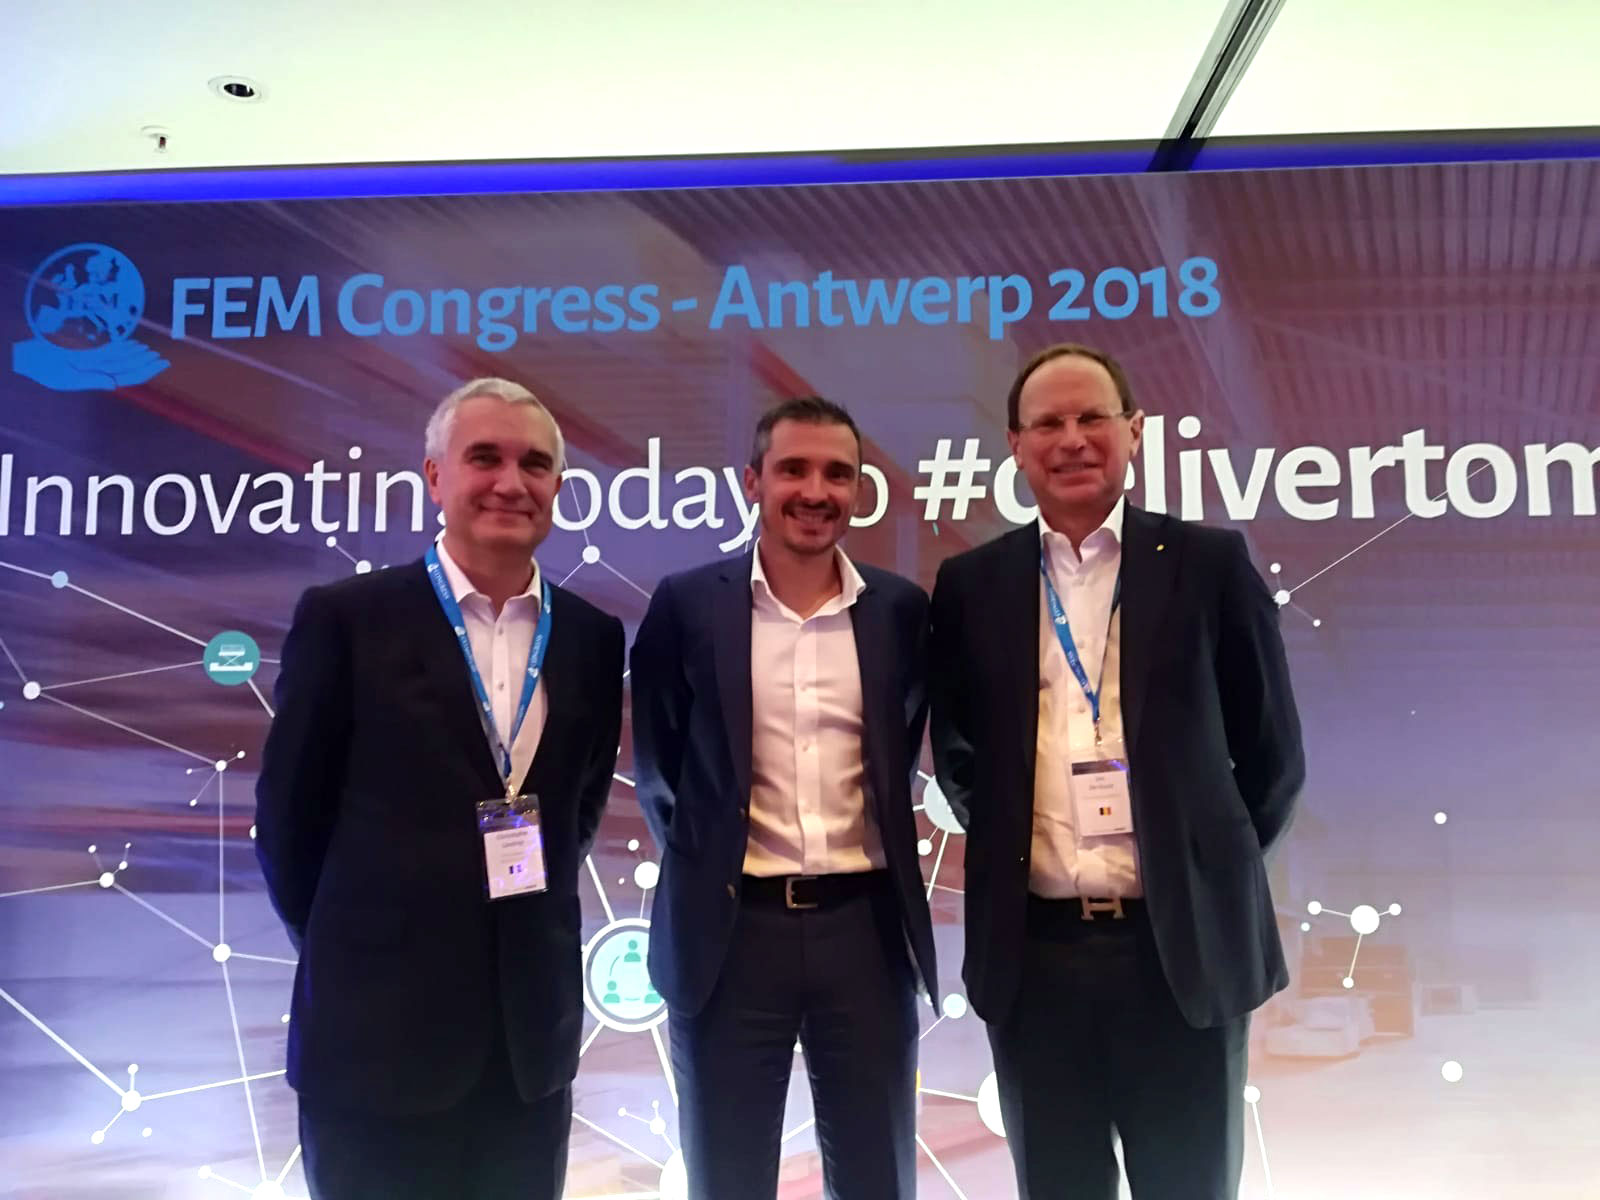 FEM Congress Antwerp 2018